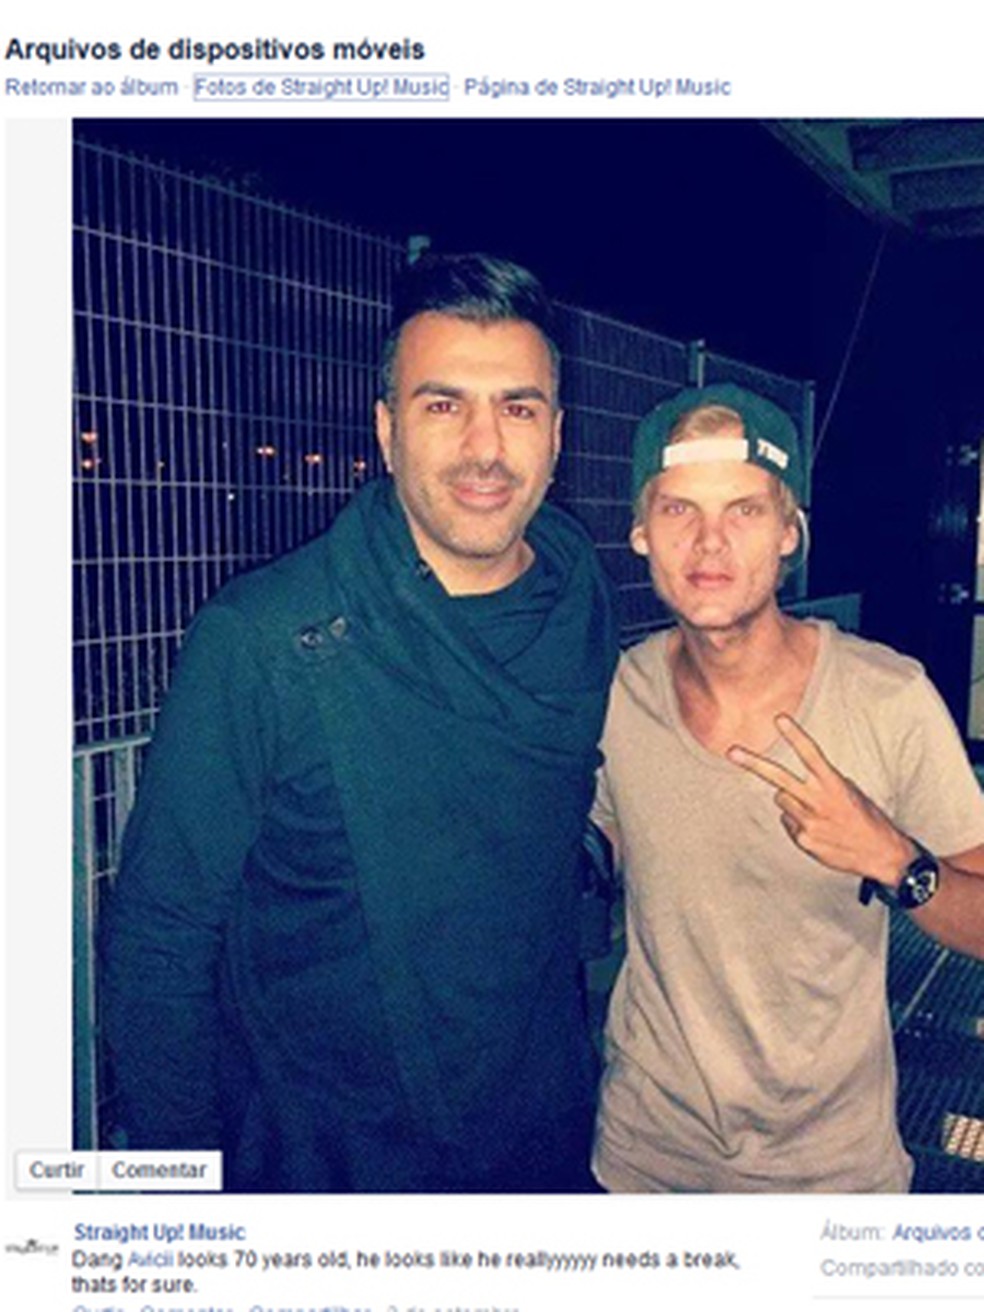 Foto com Avicii divulgada pela gravadora Straight up music! em 2014, que deixou os fãs preocupados (Foto: Reprodução/Facebook)